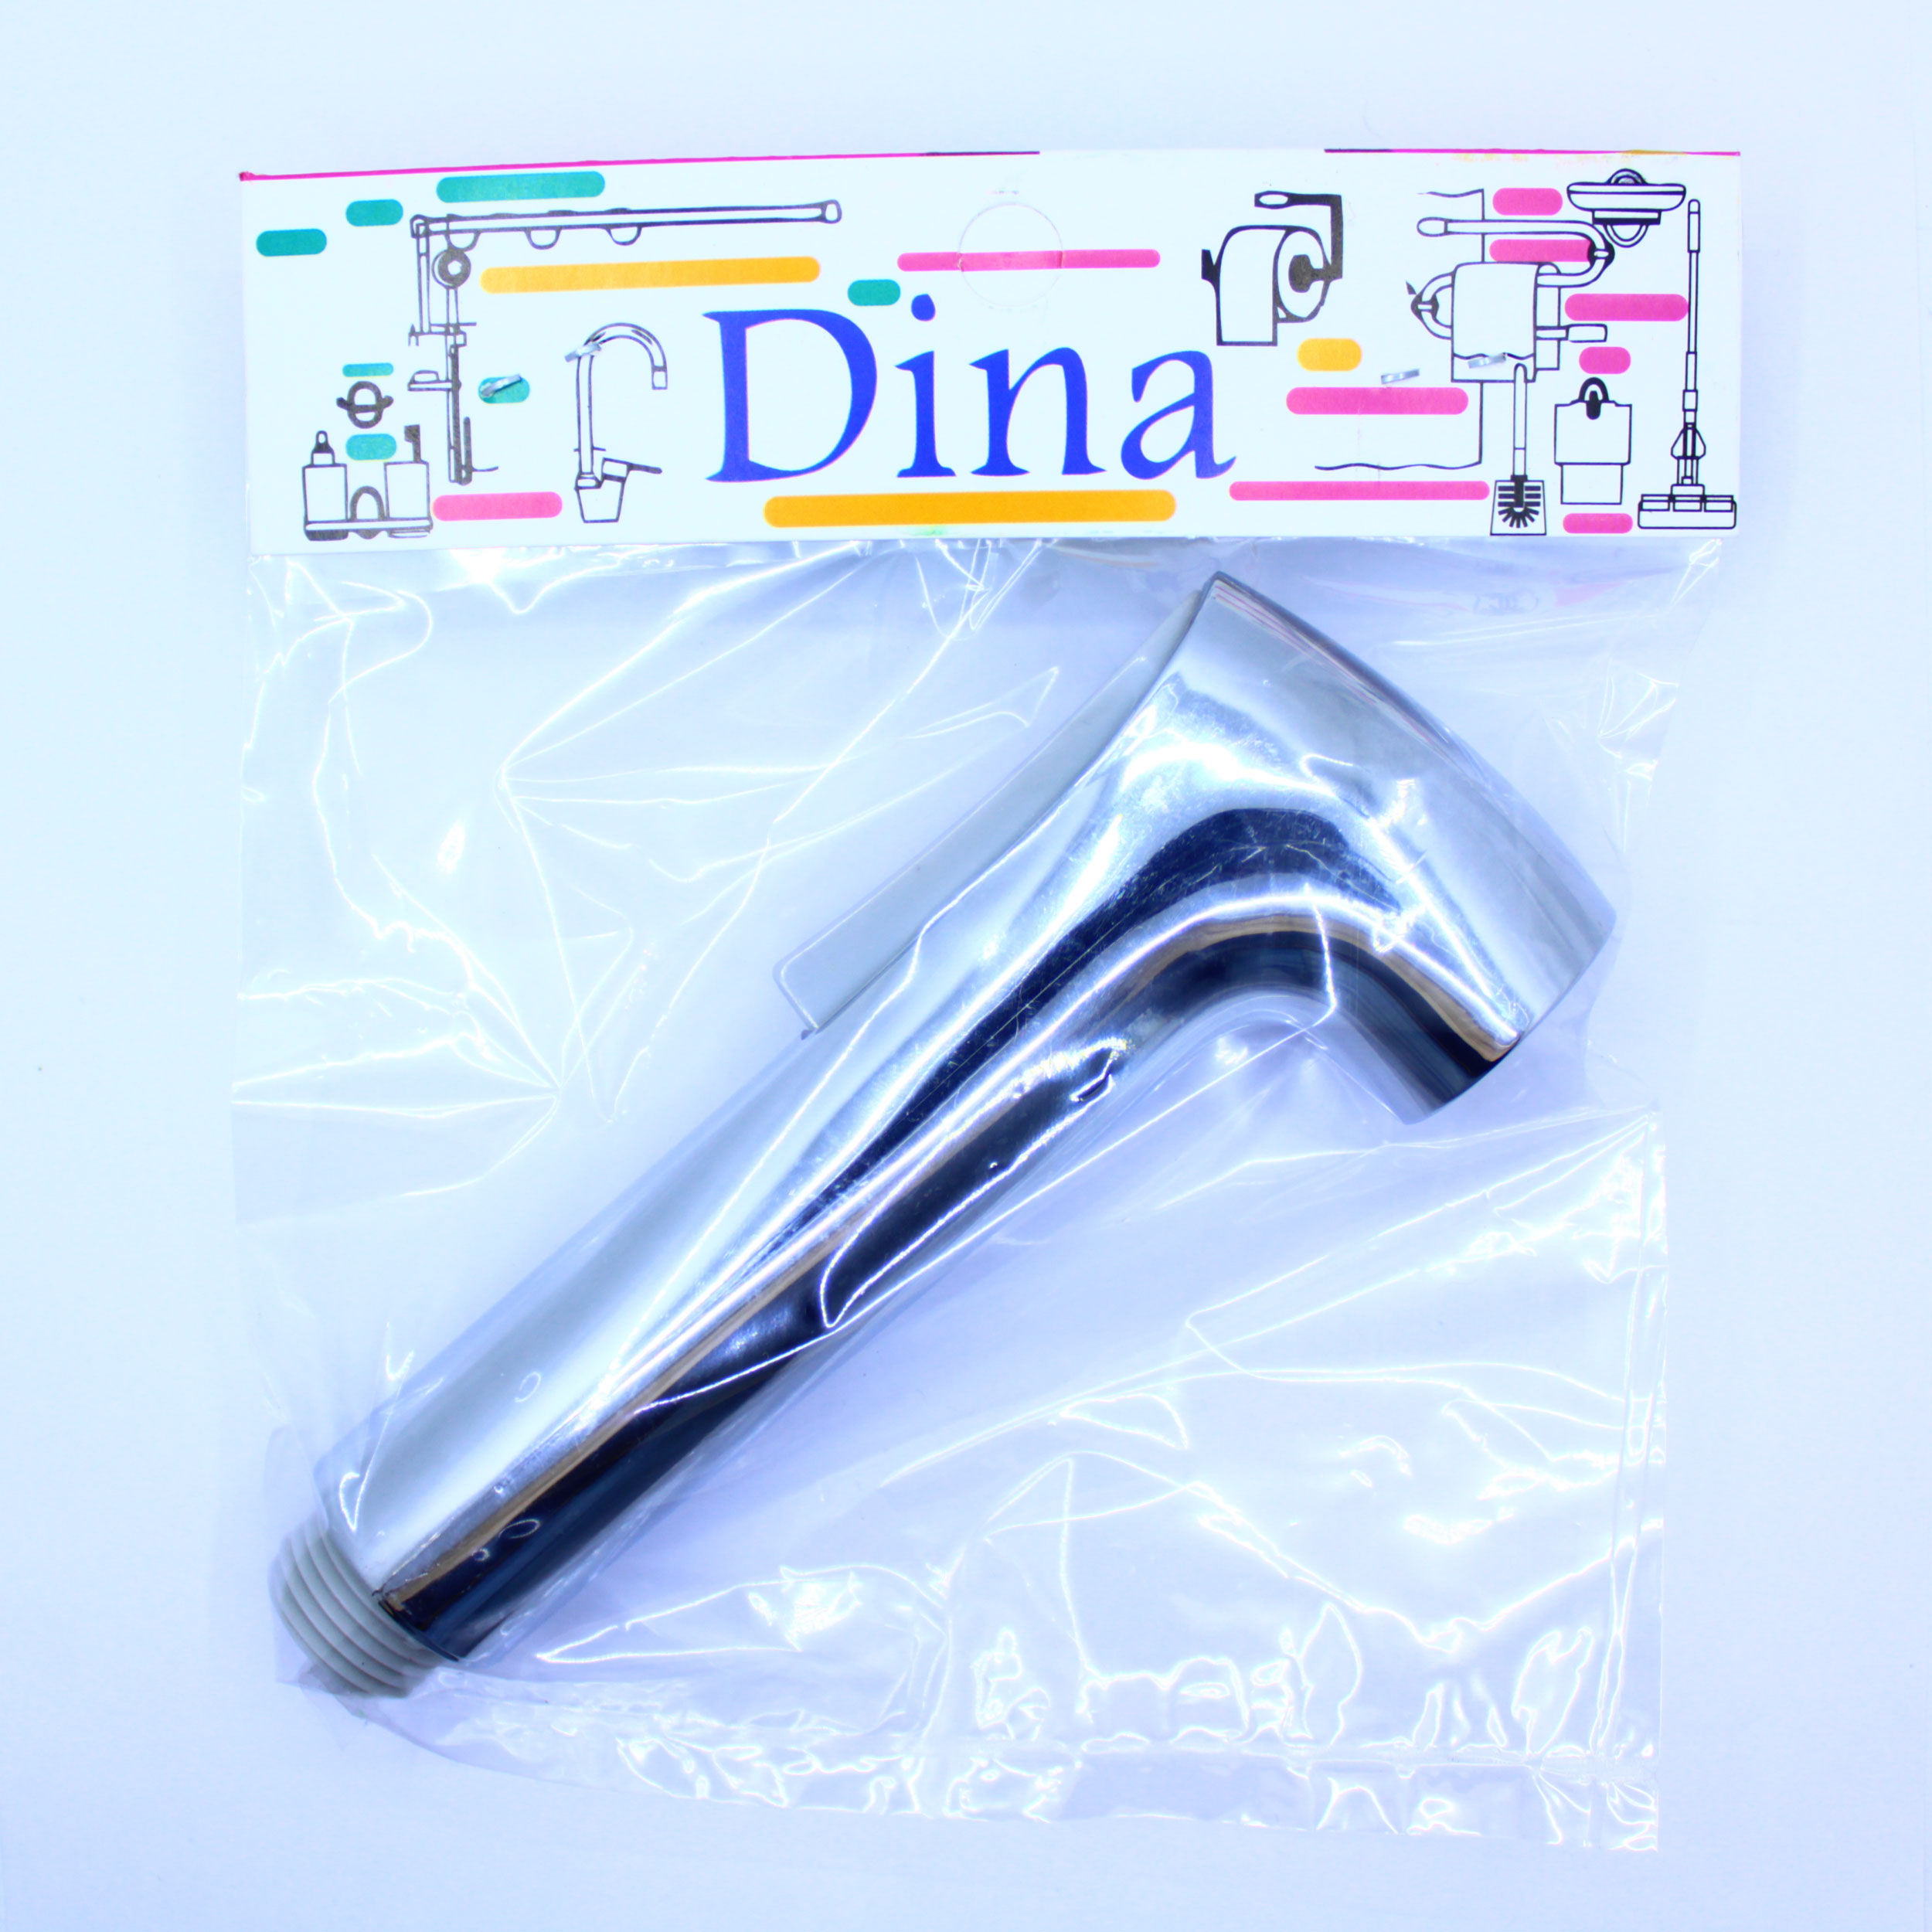 سری شلنگ توالت دینا مدل Dina-178 بسته 4 عددی